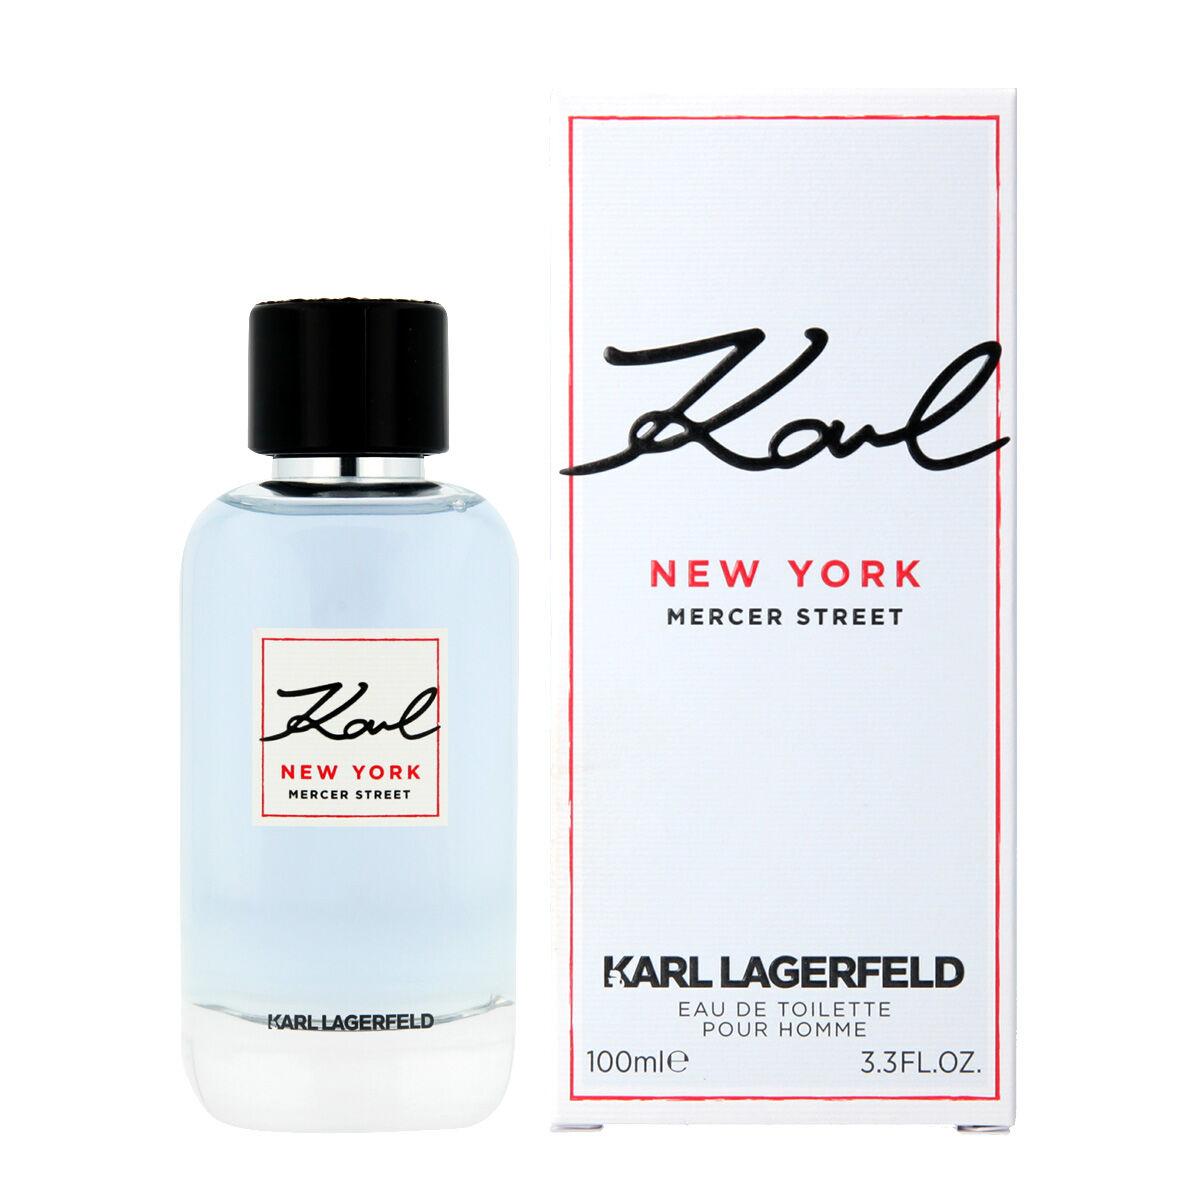 Se Herreparfume Karl Lagerfeld EDT Karl New York Mercer Street 100 ml hos Boligcenter.dk